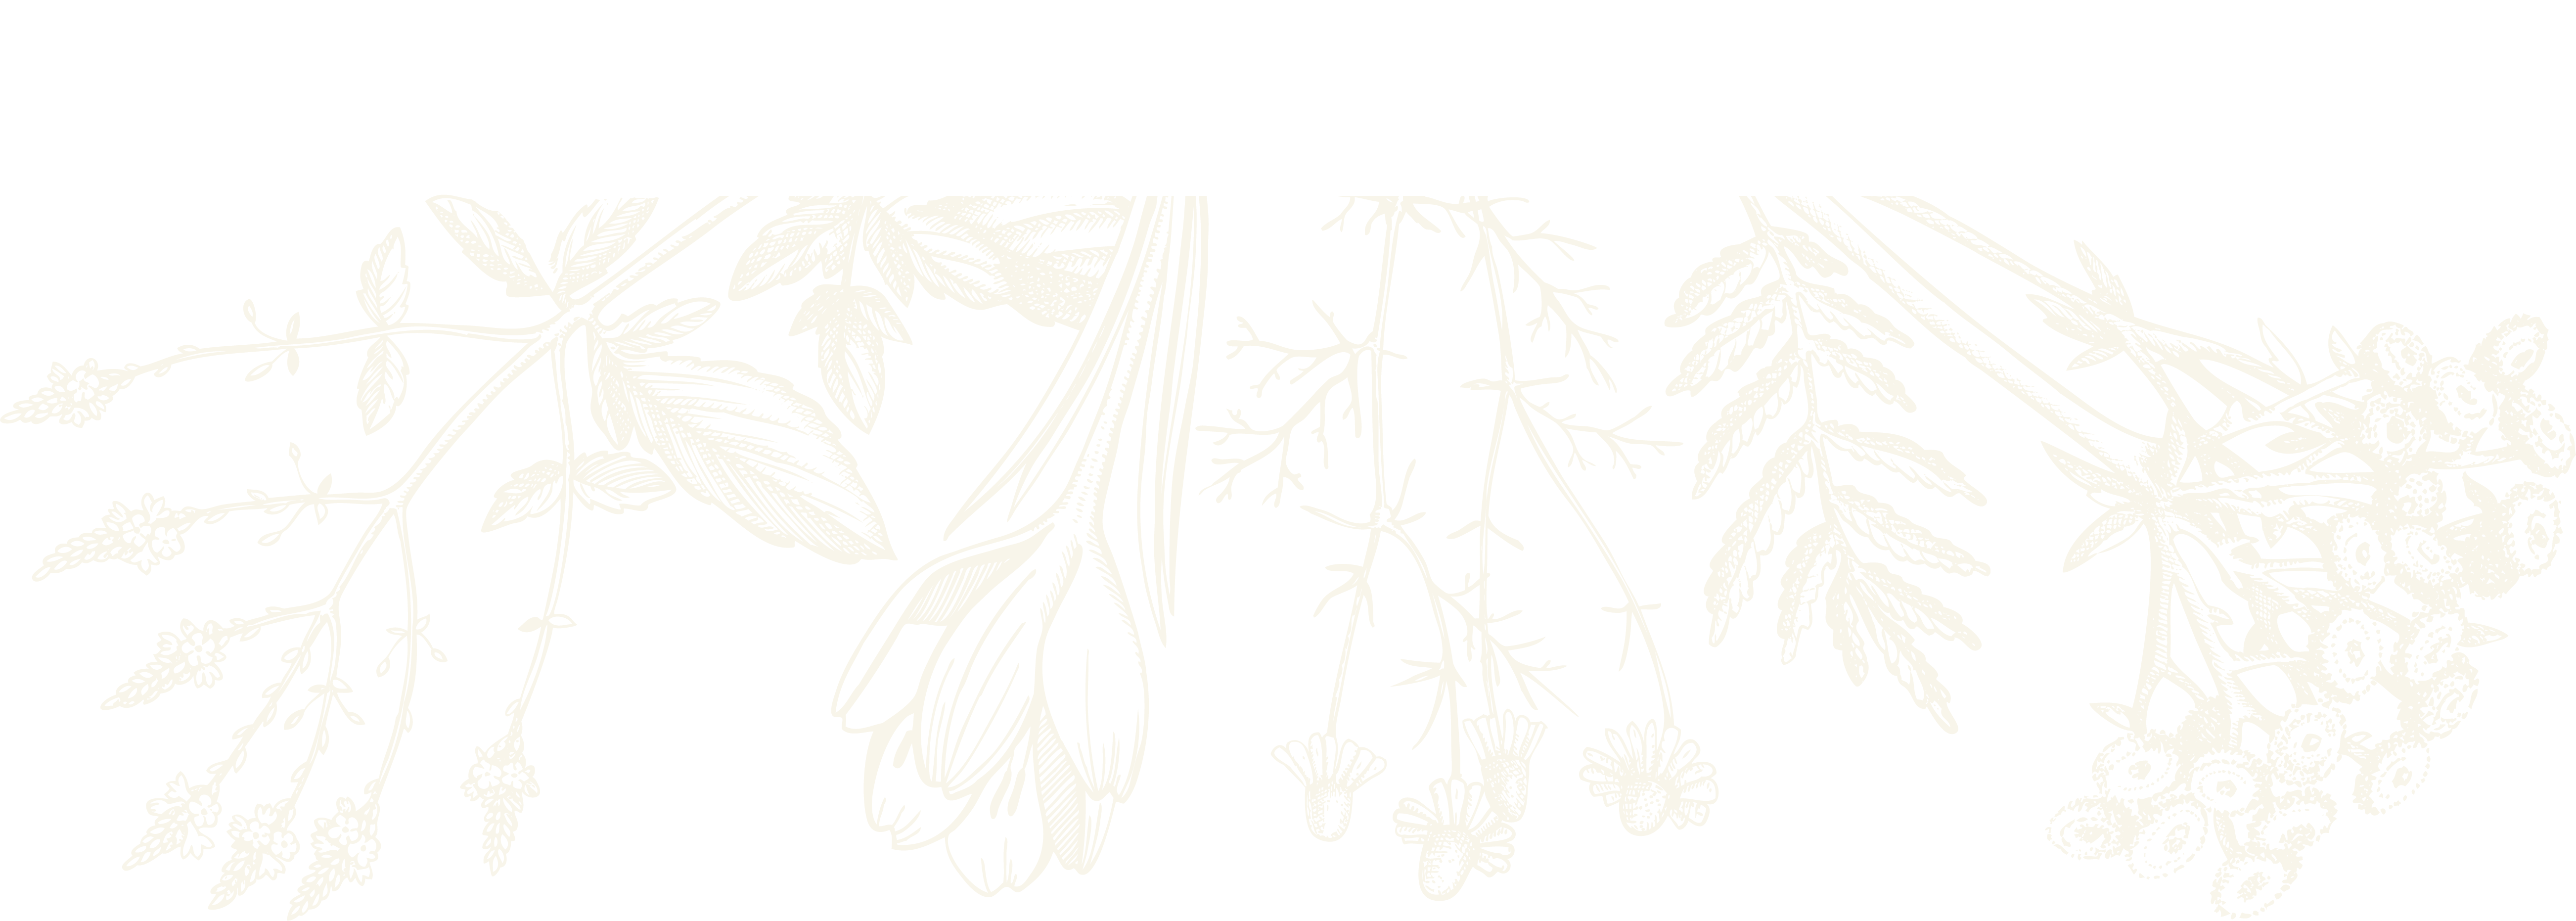 botanical sketch herbalism school